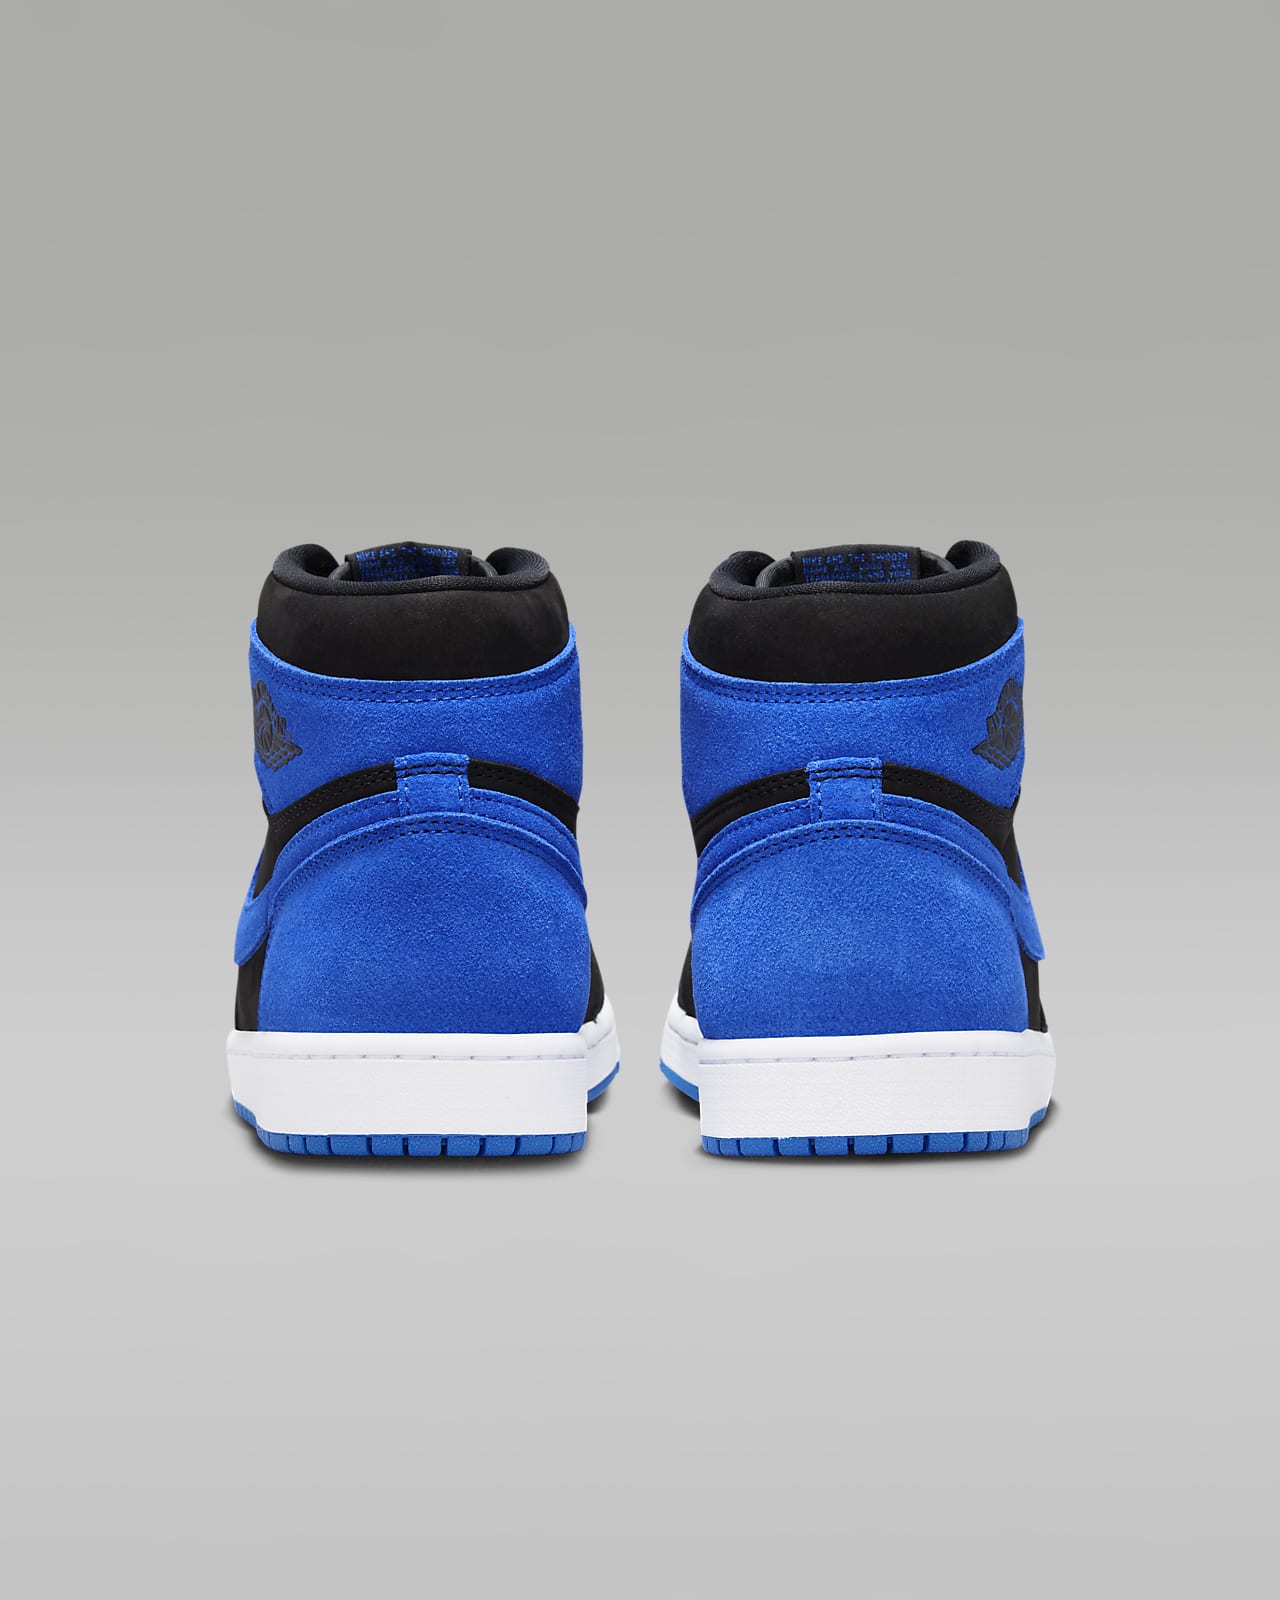 Air Jordan 1 High OG 'Royal Reimagined' Men's Shoes